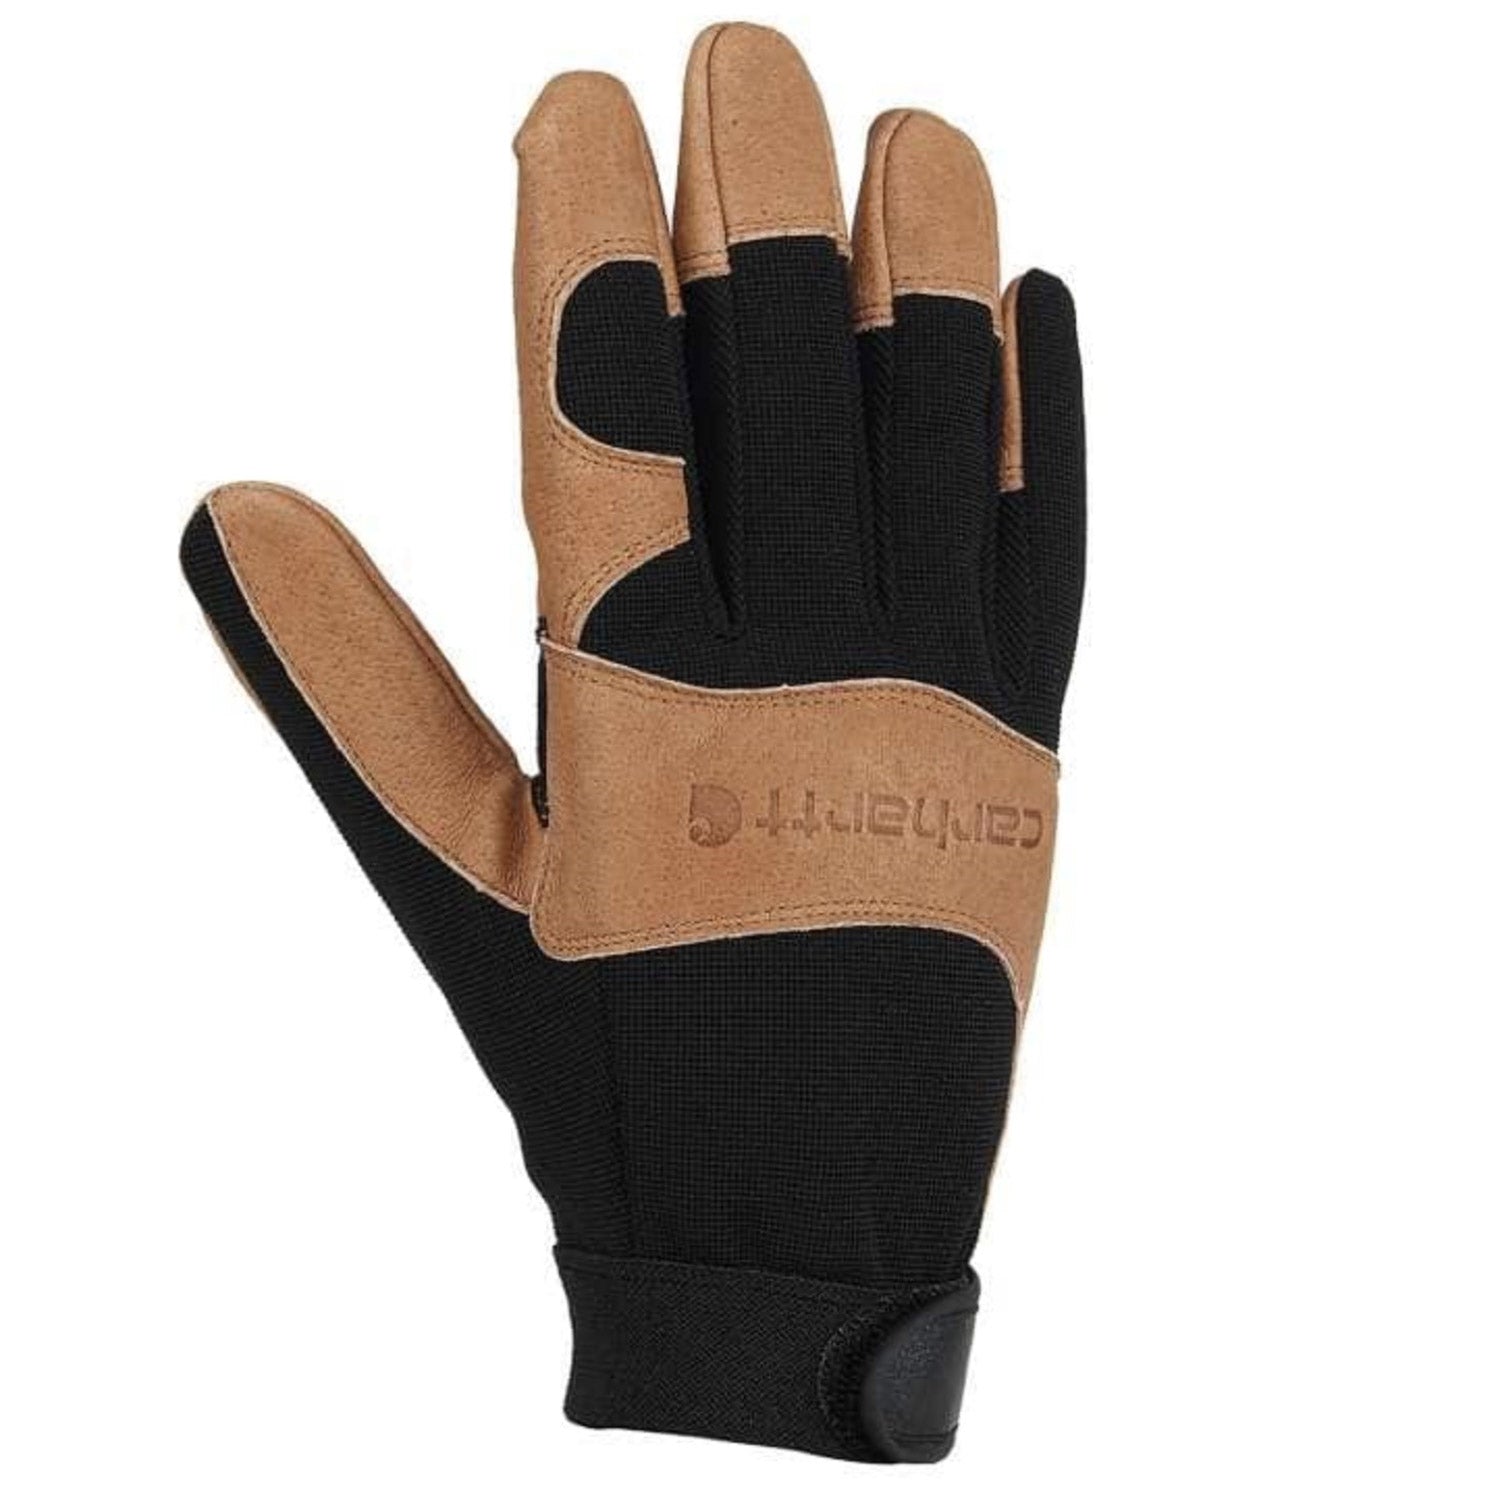 Carhartt Men's The Dex II Glove - Work World - Workwear, Work Boots, Safety Gear